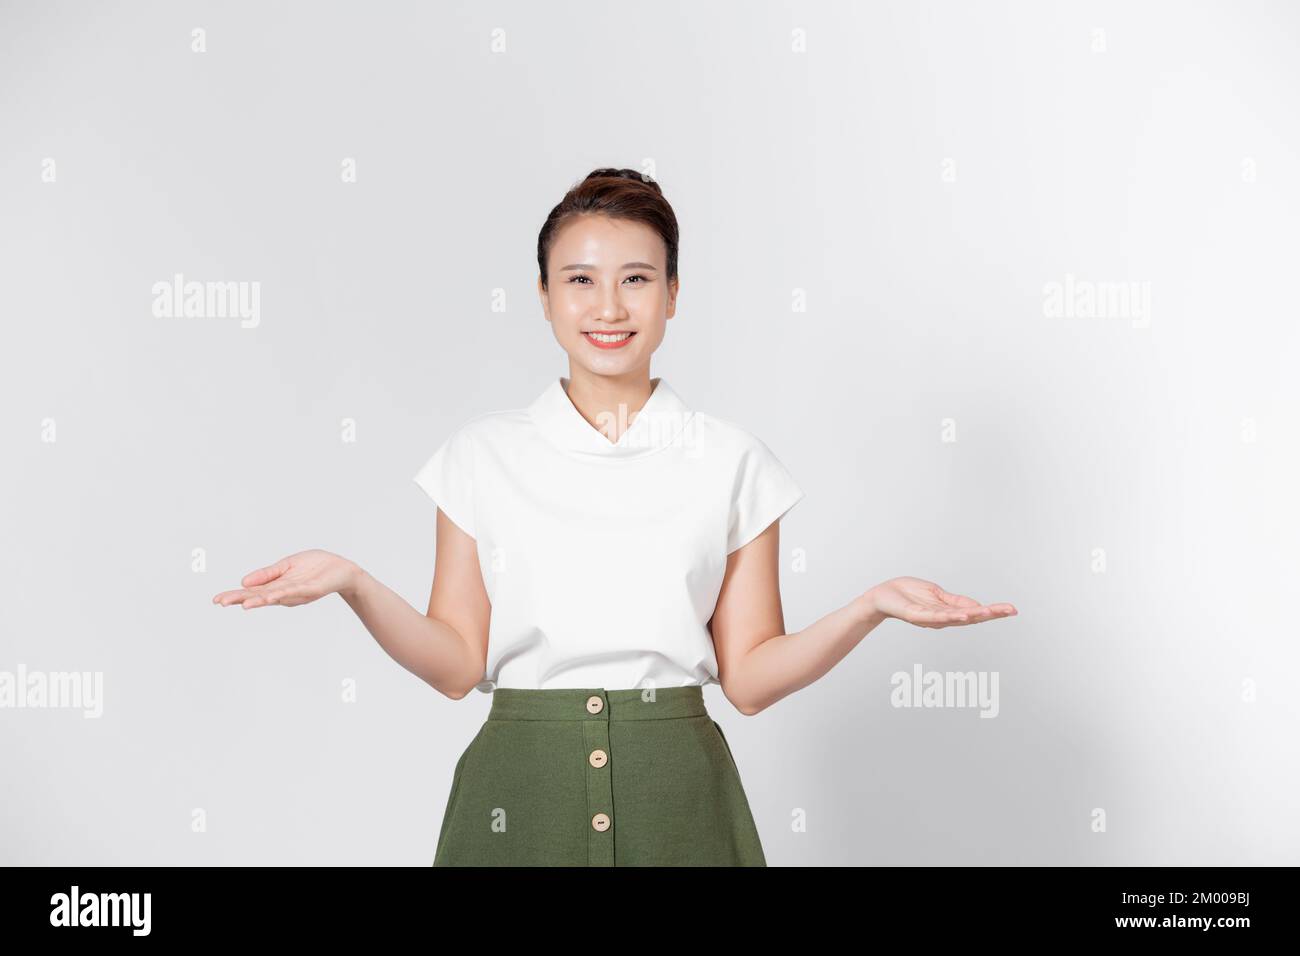 Una joven asiática levantó la mano izquierda y la derecha para comparar o demostrar el producto en el espacio de copia Foto de stock